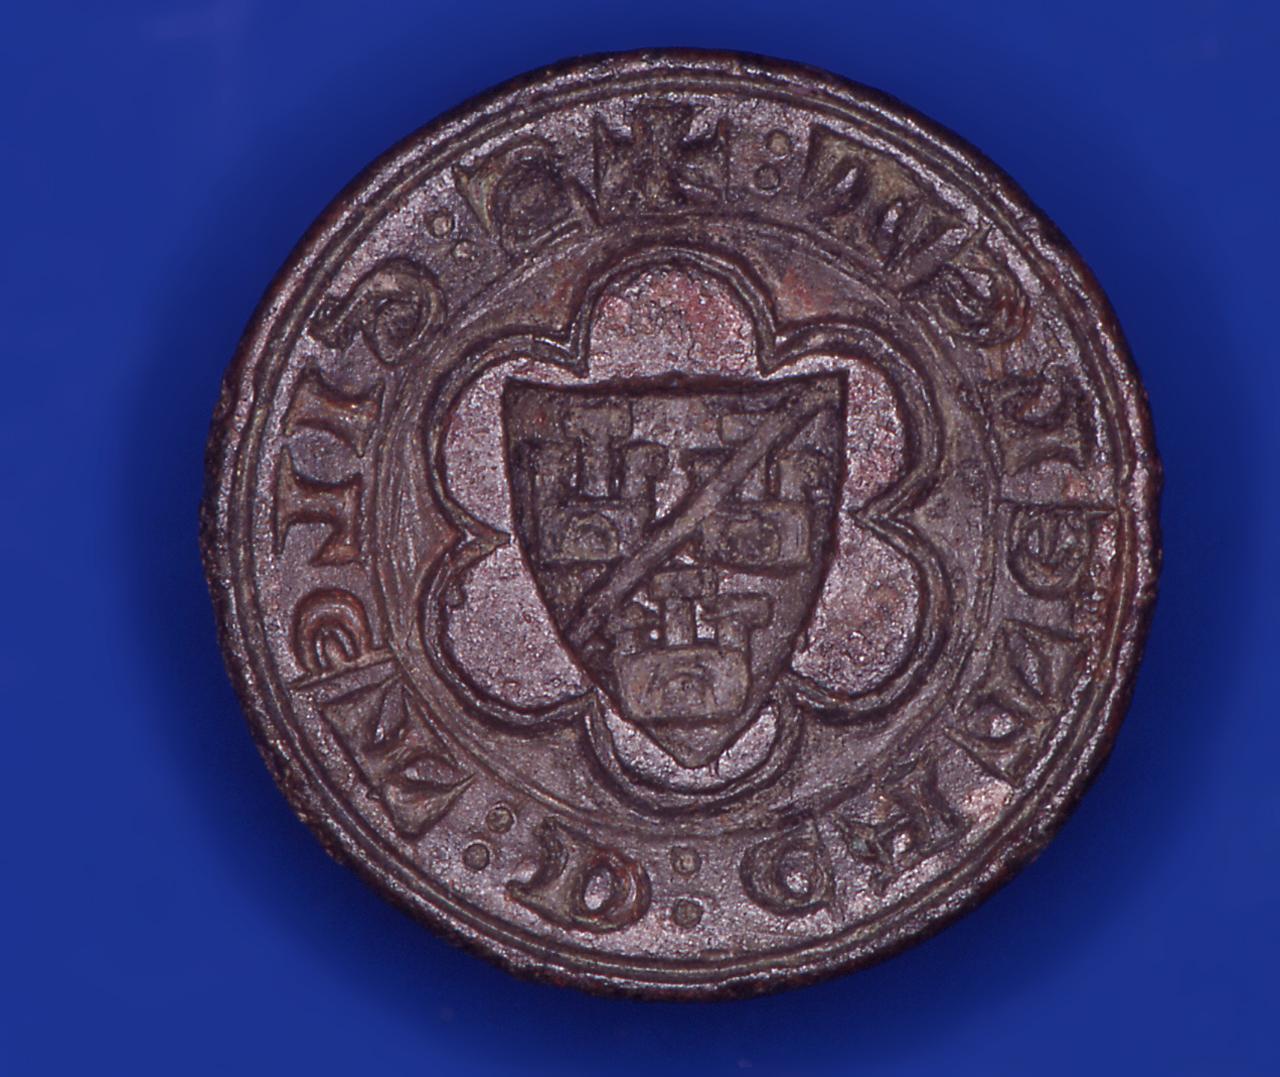 stemma di 'Gilet de' Catelet' (matrice di sigillo) - bottega italiana (sec. XIV)